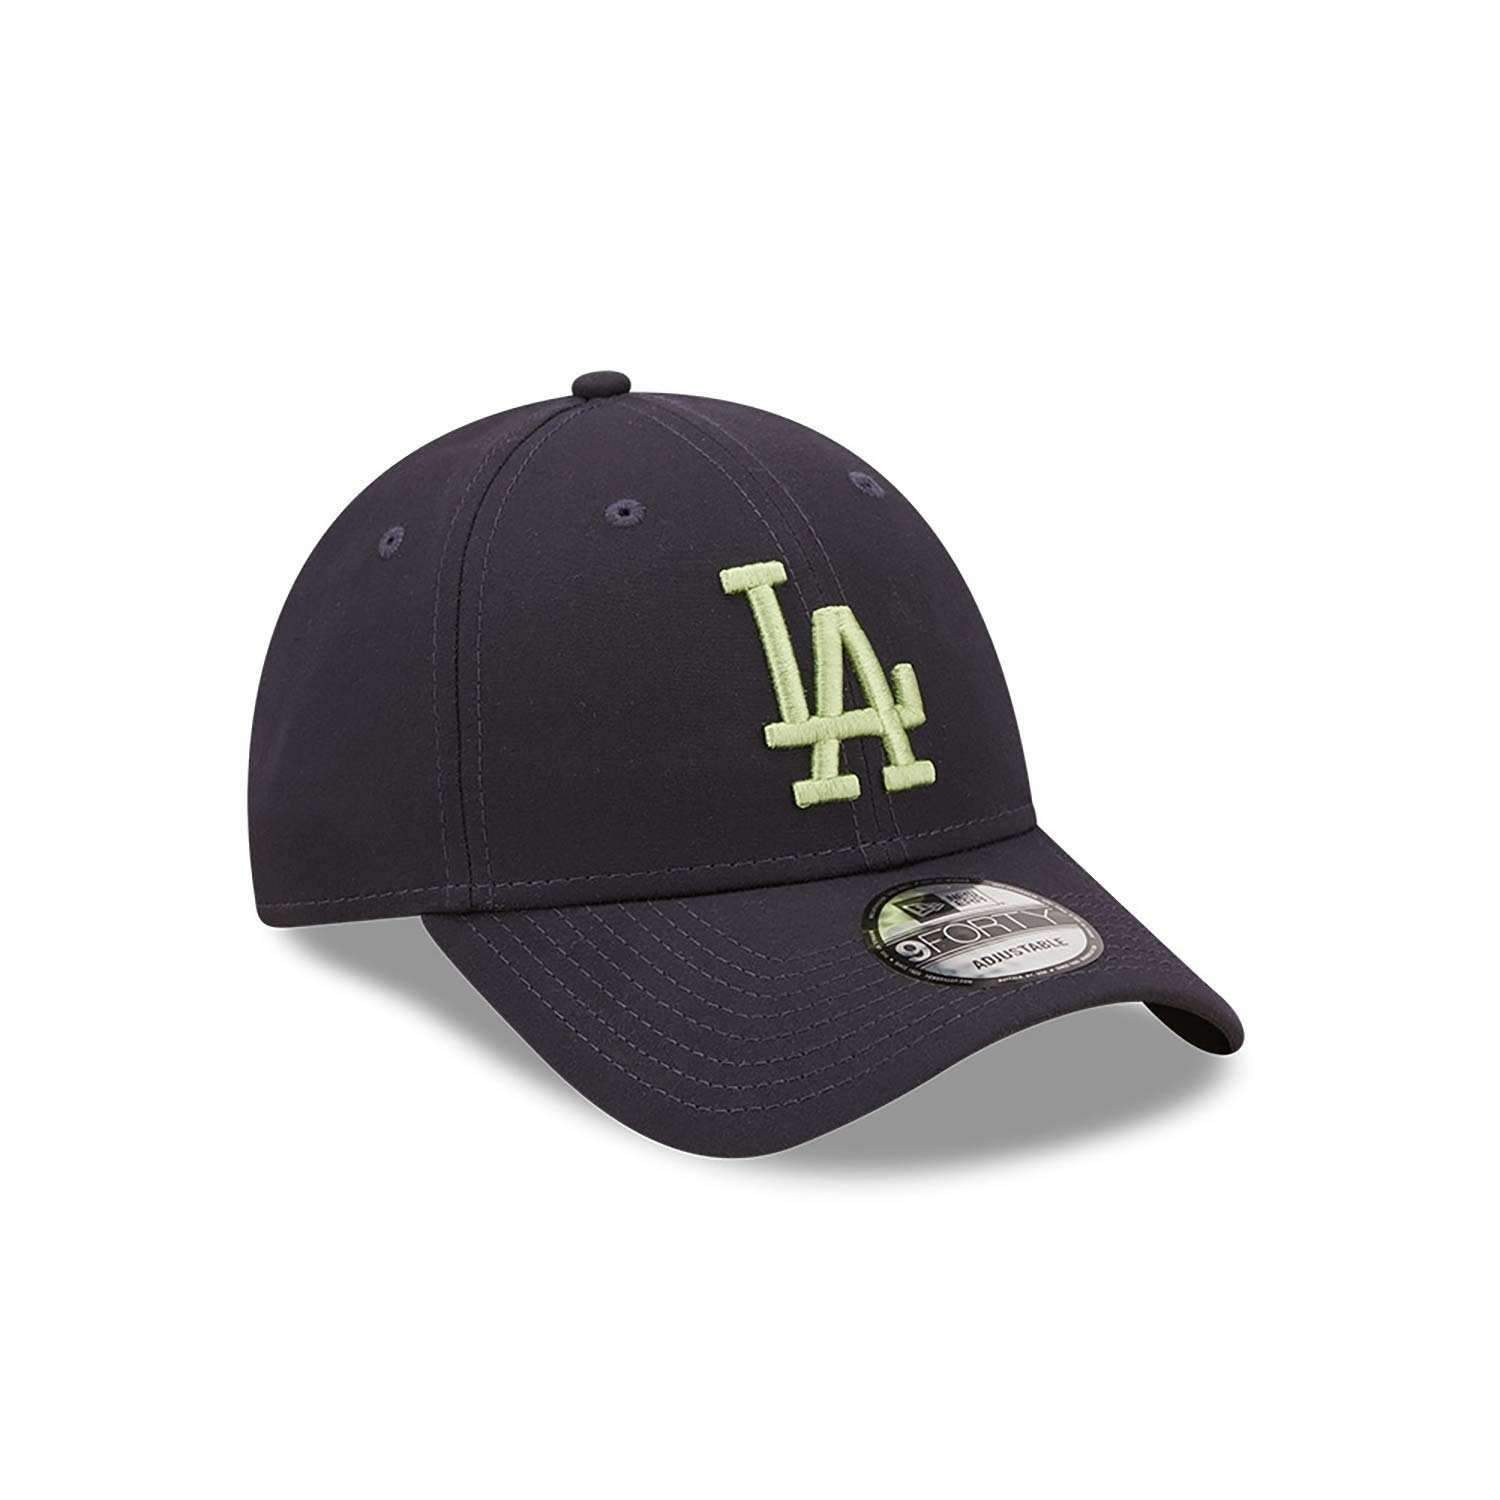 Era Repreve New LA Cap Dodgers Baseball